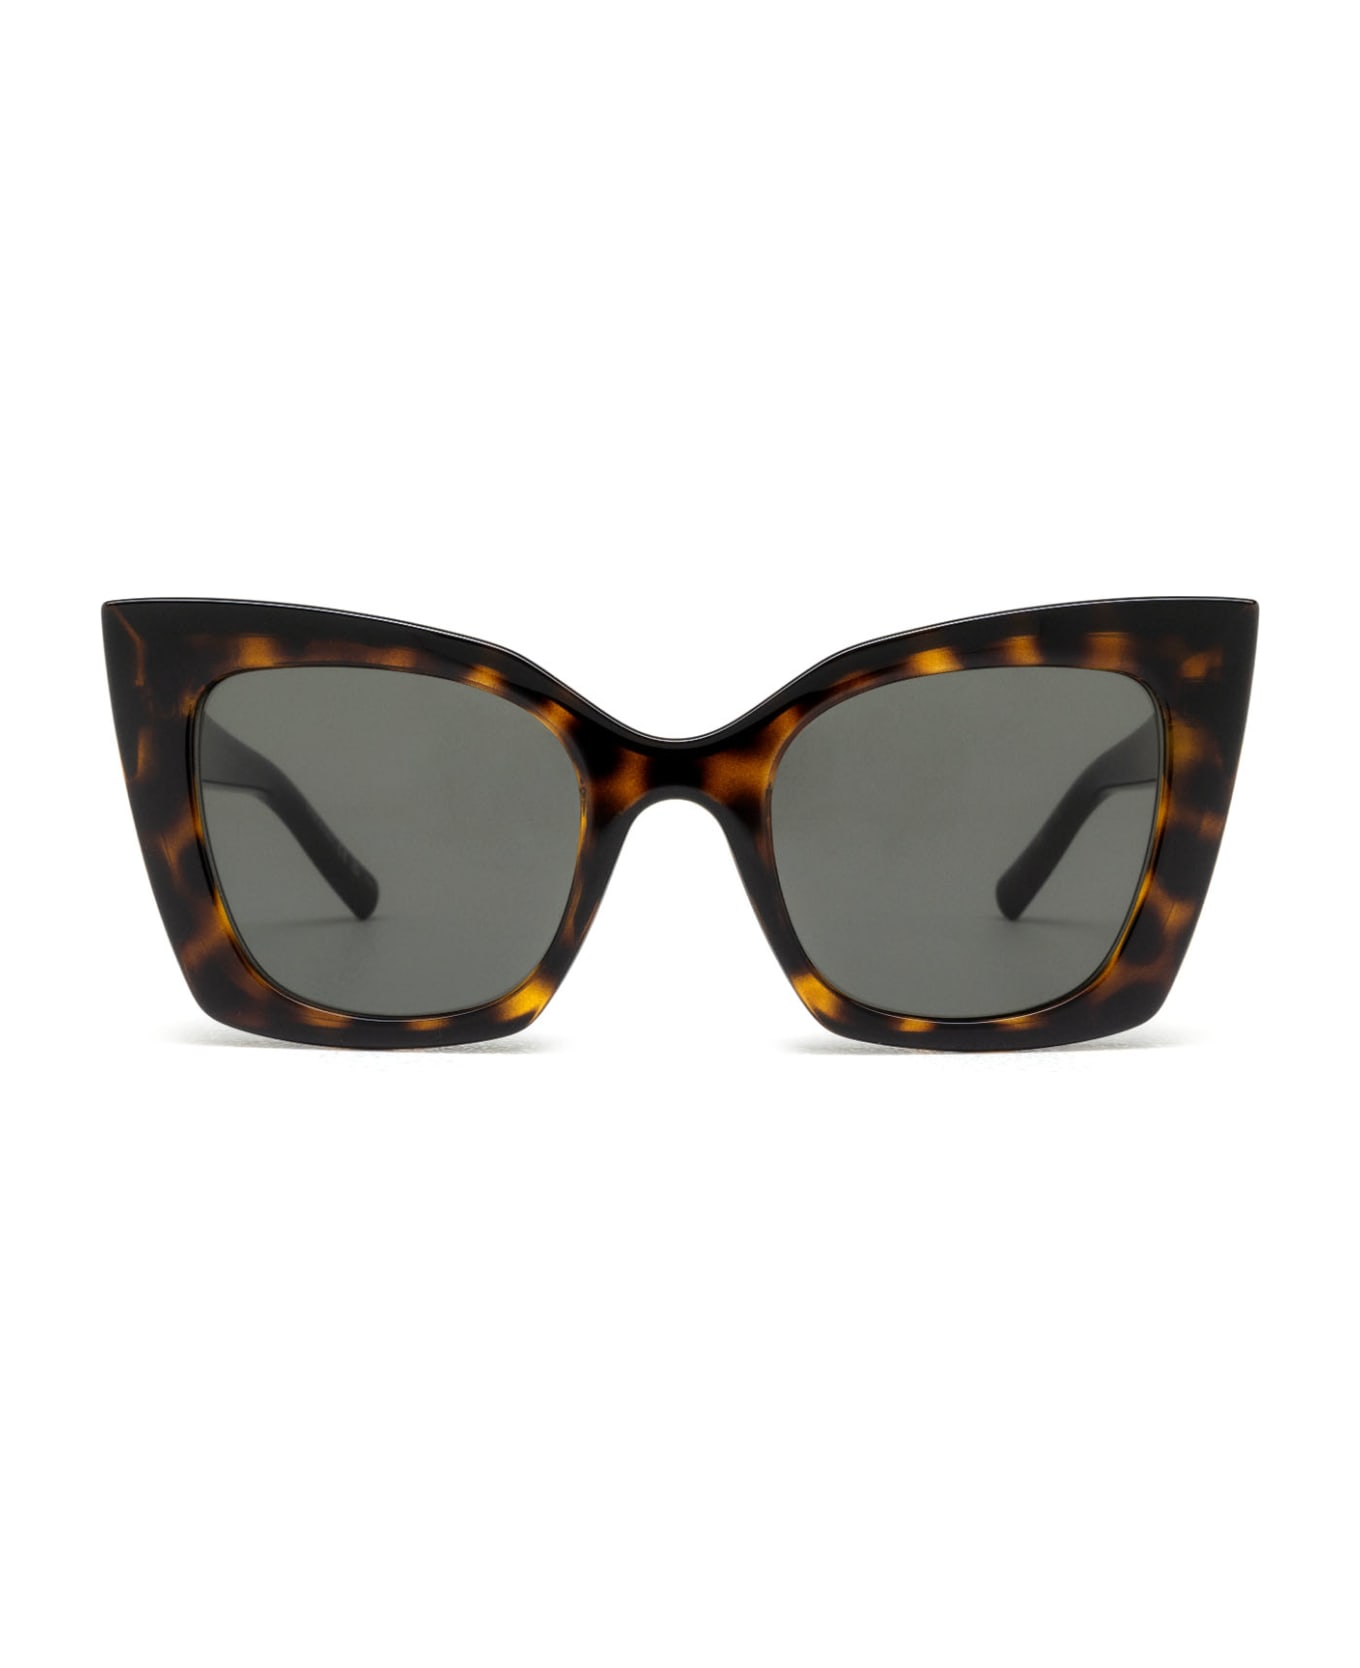 Saint Laurent Eyewear Sl 552 Havana Sunglasses - Havana